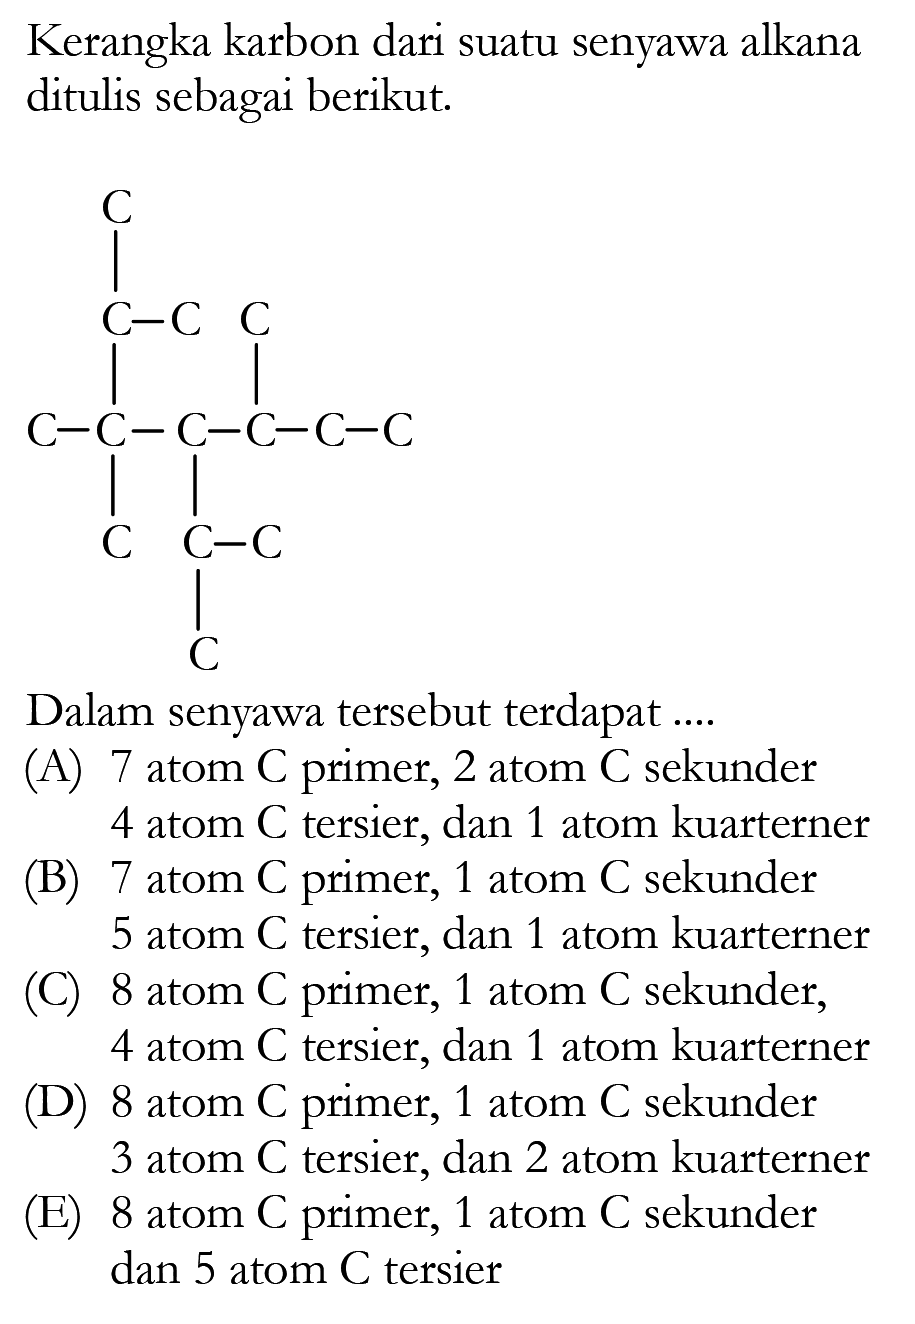 Kerangka karbon dari suatu senyawa alkana ditulis sebagai berikut: C C - C C C - C - C - C - C - C C C - C C Dalam senyawa tersebut terdapat ...